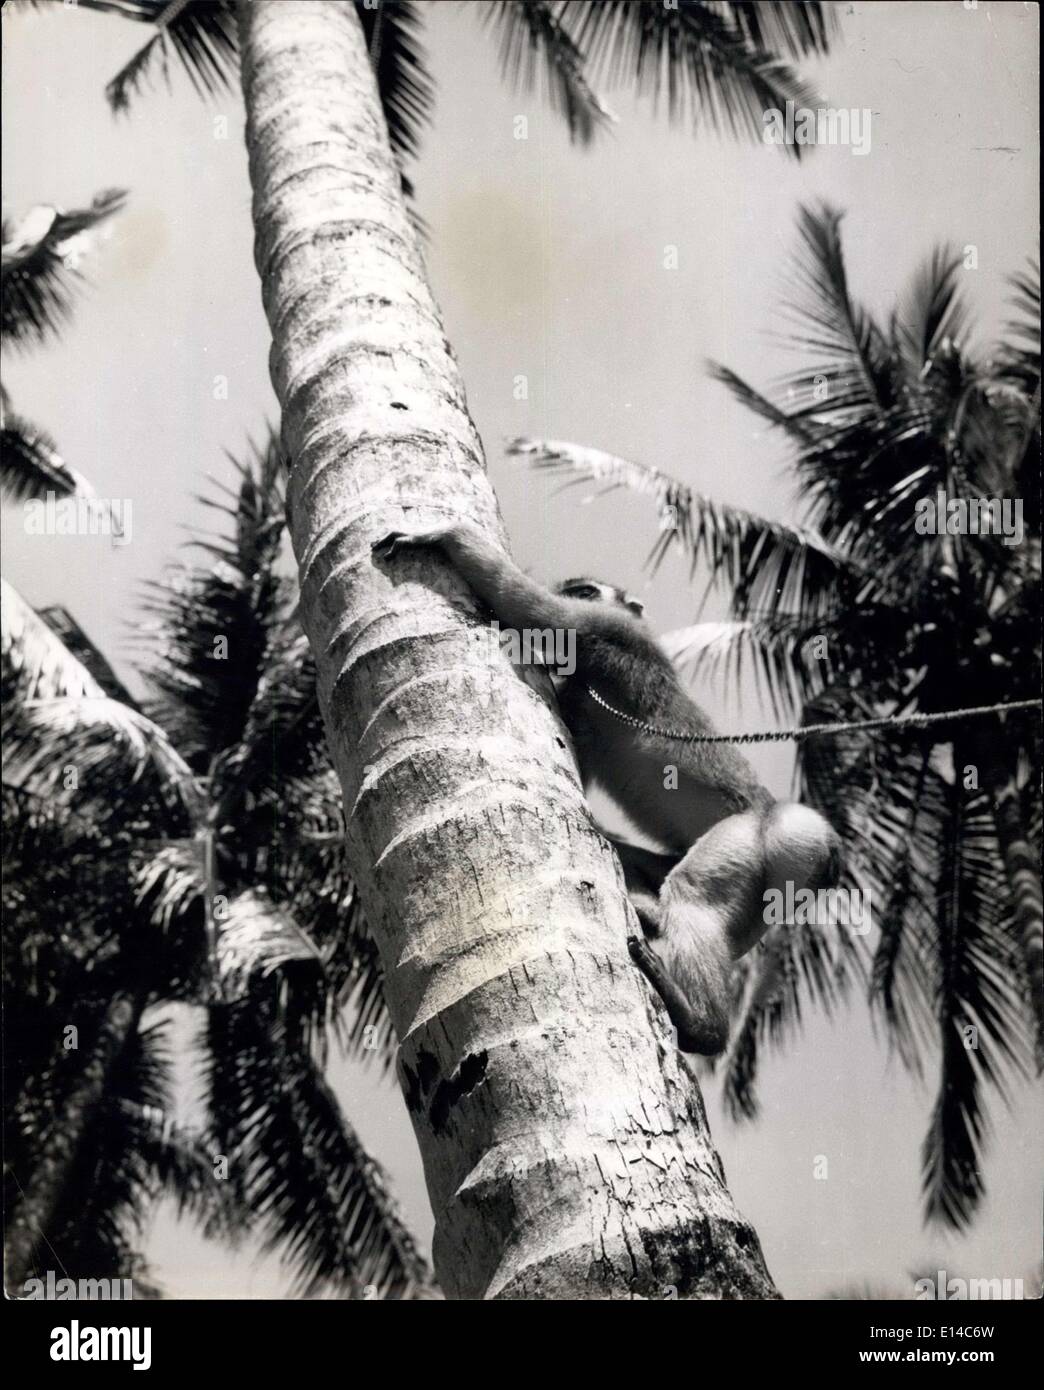 17 de abril de 2012 - hacia la cima, el tallo de la palma se esbelta y se asaña en la brisa, pero el mono se utiliza para treetop la vida, Y se aferra tenazmente con las manos y los pies mientras se acerca a la cima donde están las nueces.Madame Monkey trabaja para ella viviendo en Sumatra: Como coleccionista de coco gana el salario de una trabajadora humana: Sumatra es una isla llena de mono de todas las formas, colores y tamaños. Los nativos tienen una larga ventaja de ken y entrenar a las hembras de monos cautivos para hacer un día útil de trabajo para su subsistencia Foto de stock